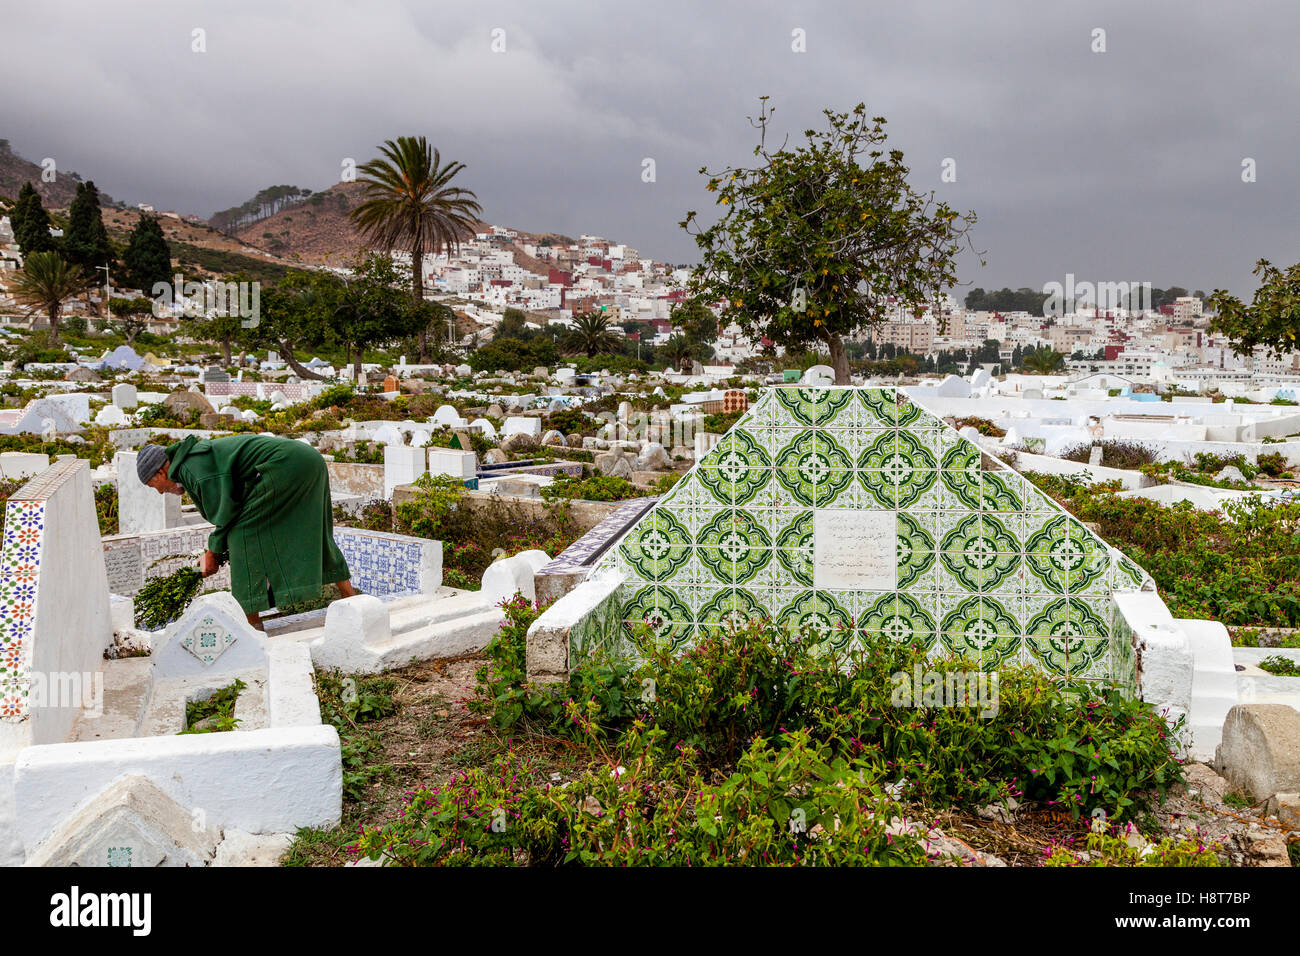 Un hombre Local tendiendo una tumba en el cementerio musulmán, Tetuán, Marruecos Foto de stock